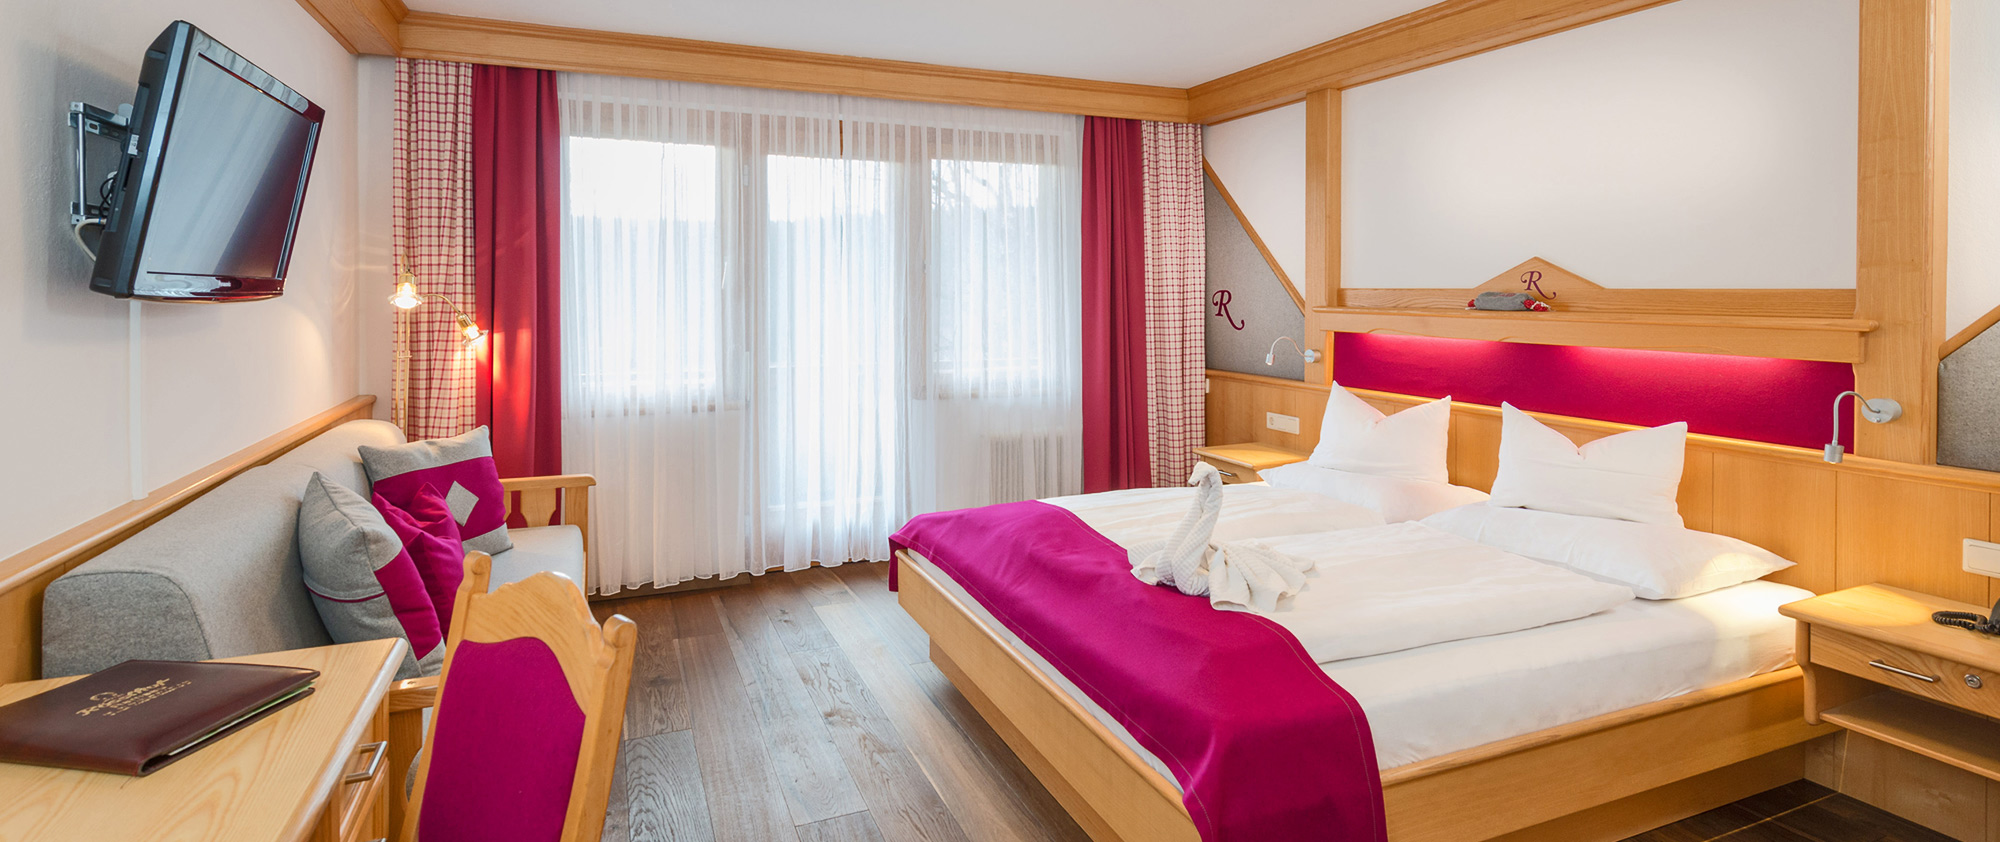 Zimmer im Hotel Rösslhof in der Ramsau